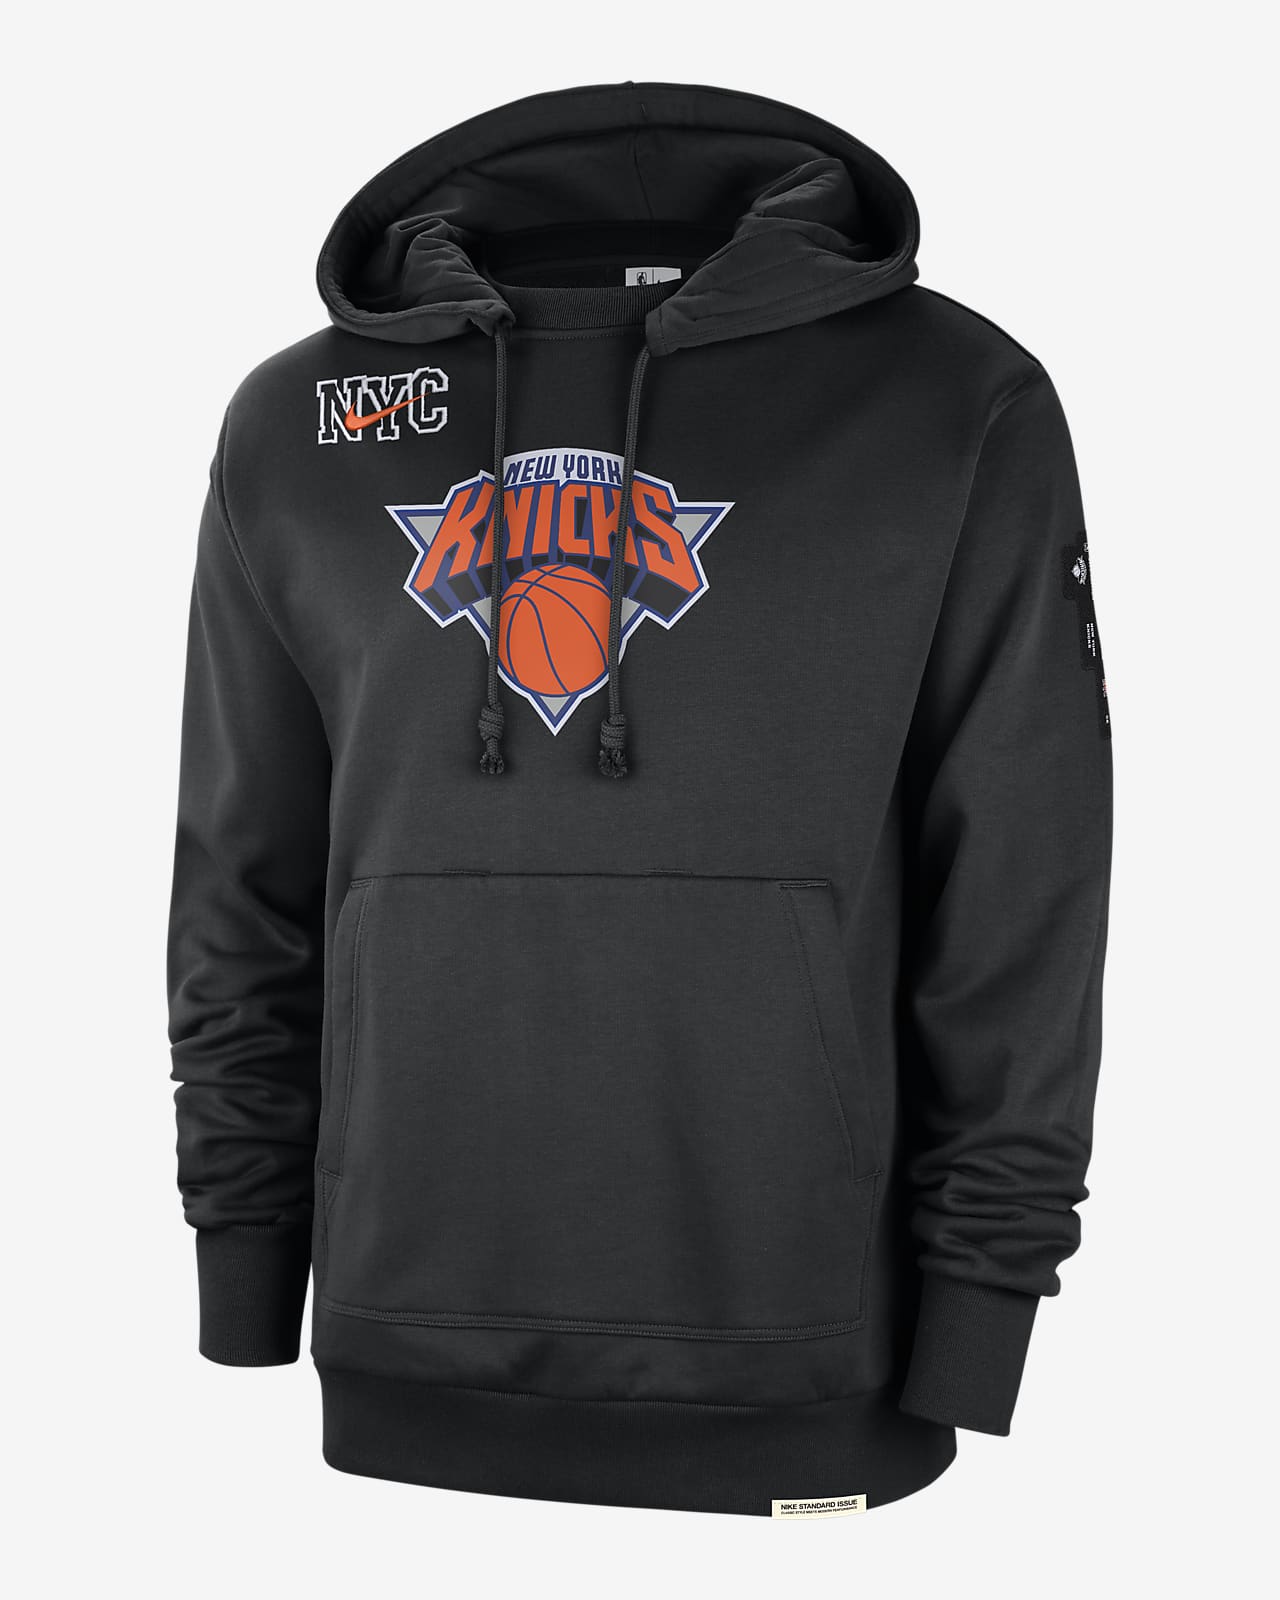 Camisas da NBA on X: 🚨 NEW YORK KNICKS! O time da cidade que nunca dorme  vai deixar isso escrito no seu uniforme City Edition. Desenho muito incomum  para a franquia! Notem